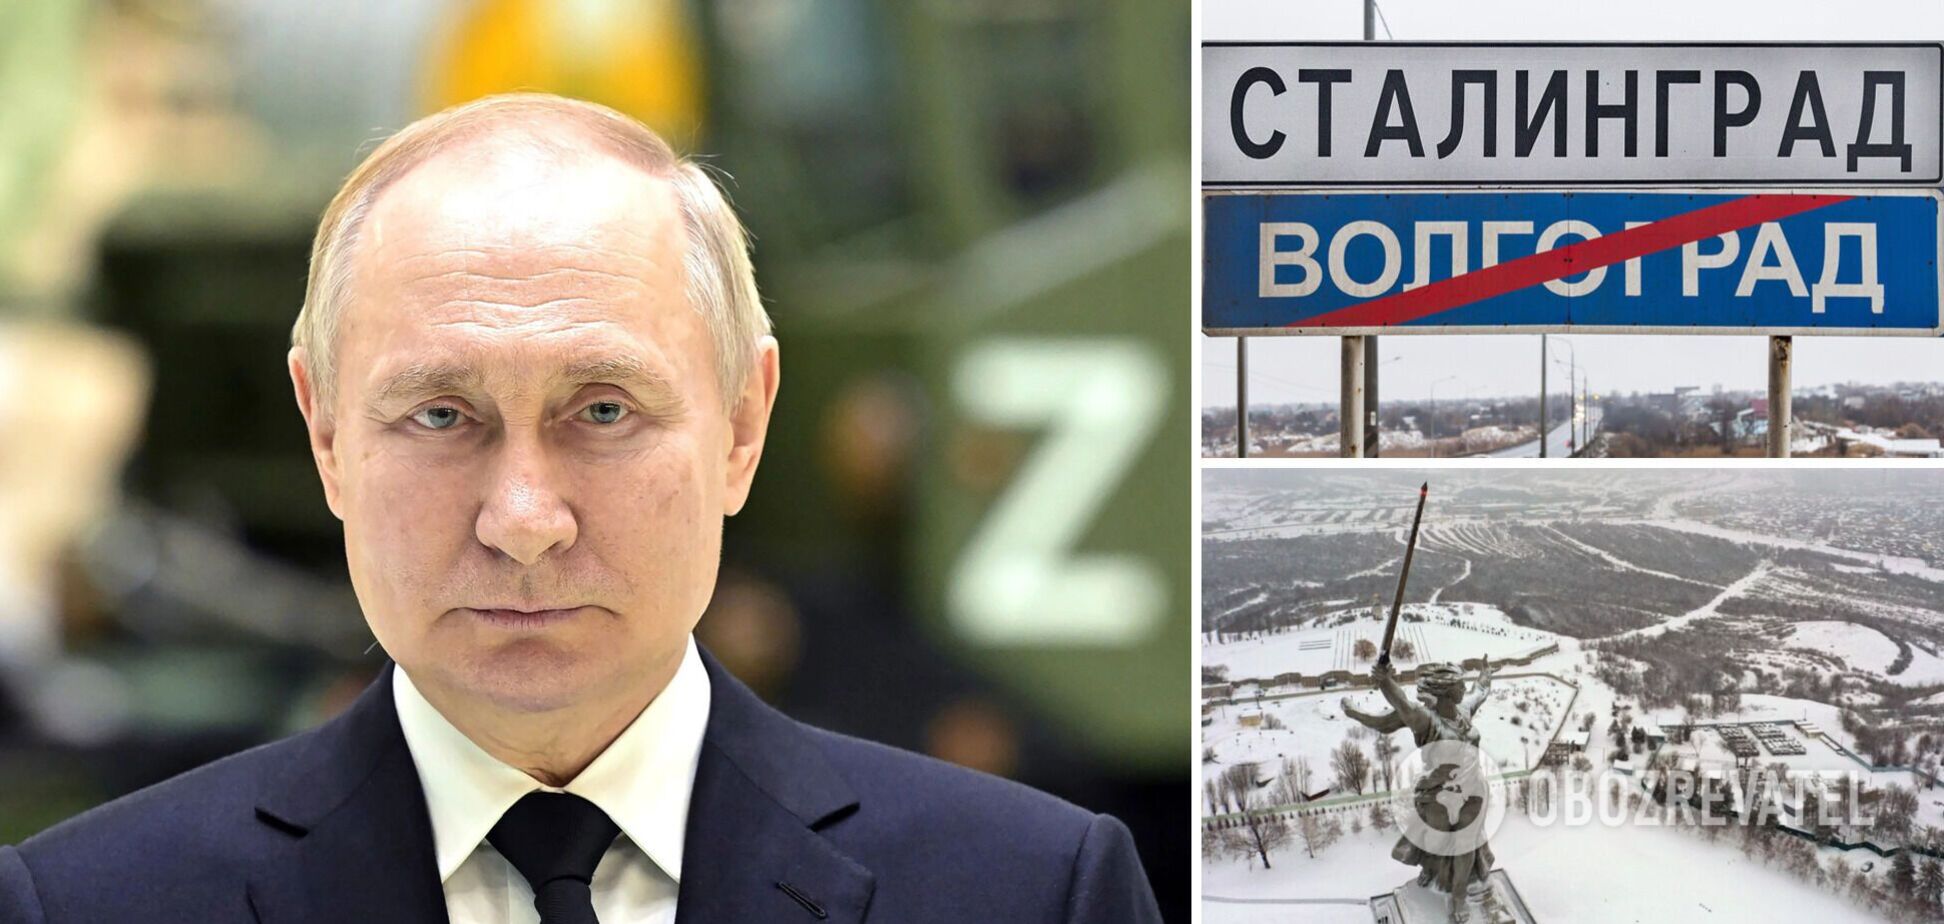 В РФ на въезде в Волгоград поставили дорожные знаки с надписью 'Сталинград' из-за визита Путина